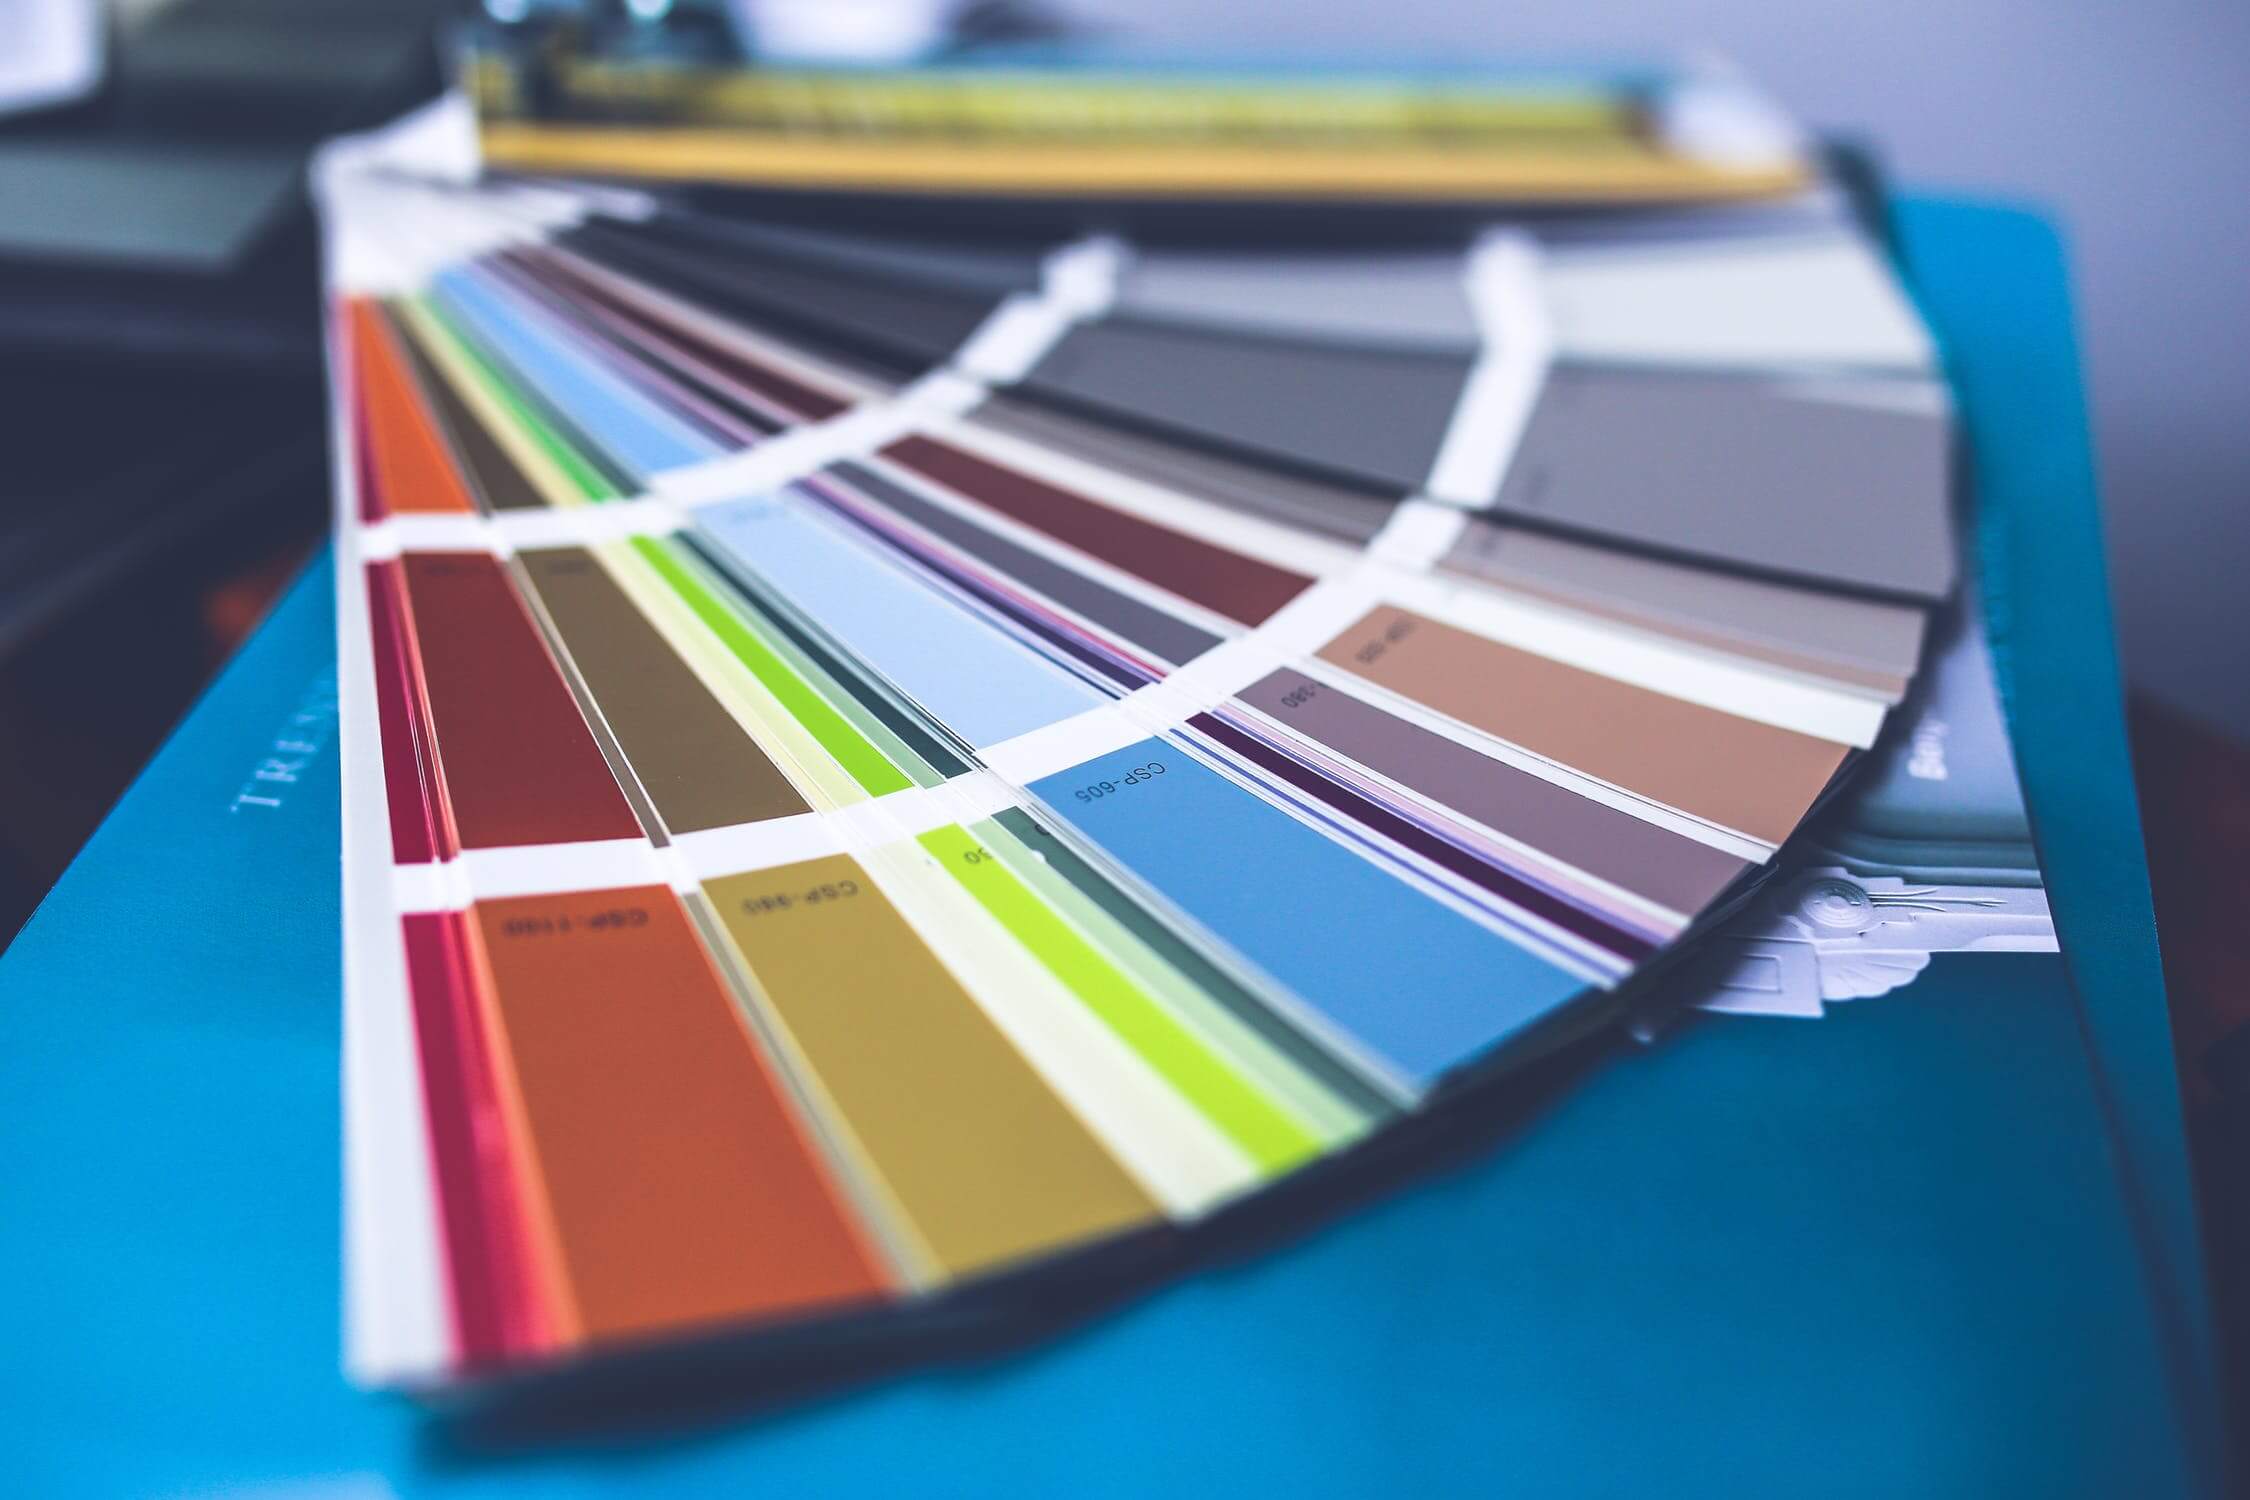 Experții în domeniul culorilor din institutul Pantone aleg luni întregi favoritul